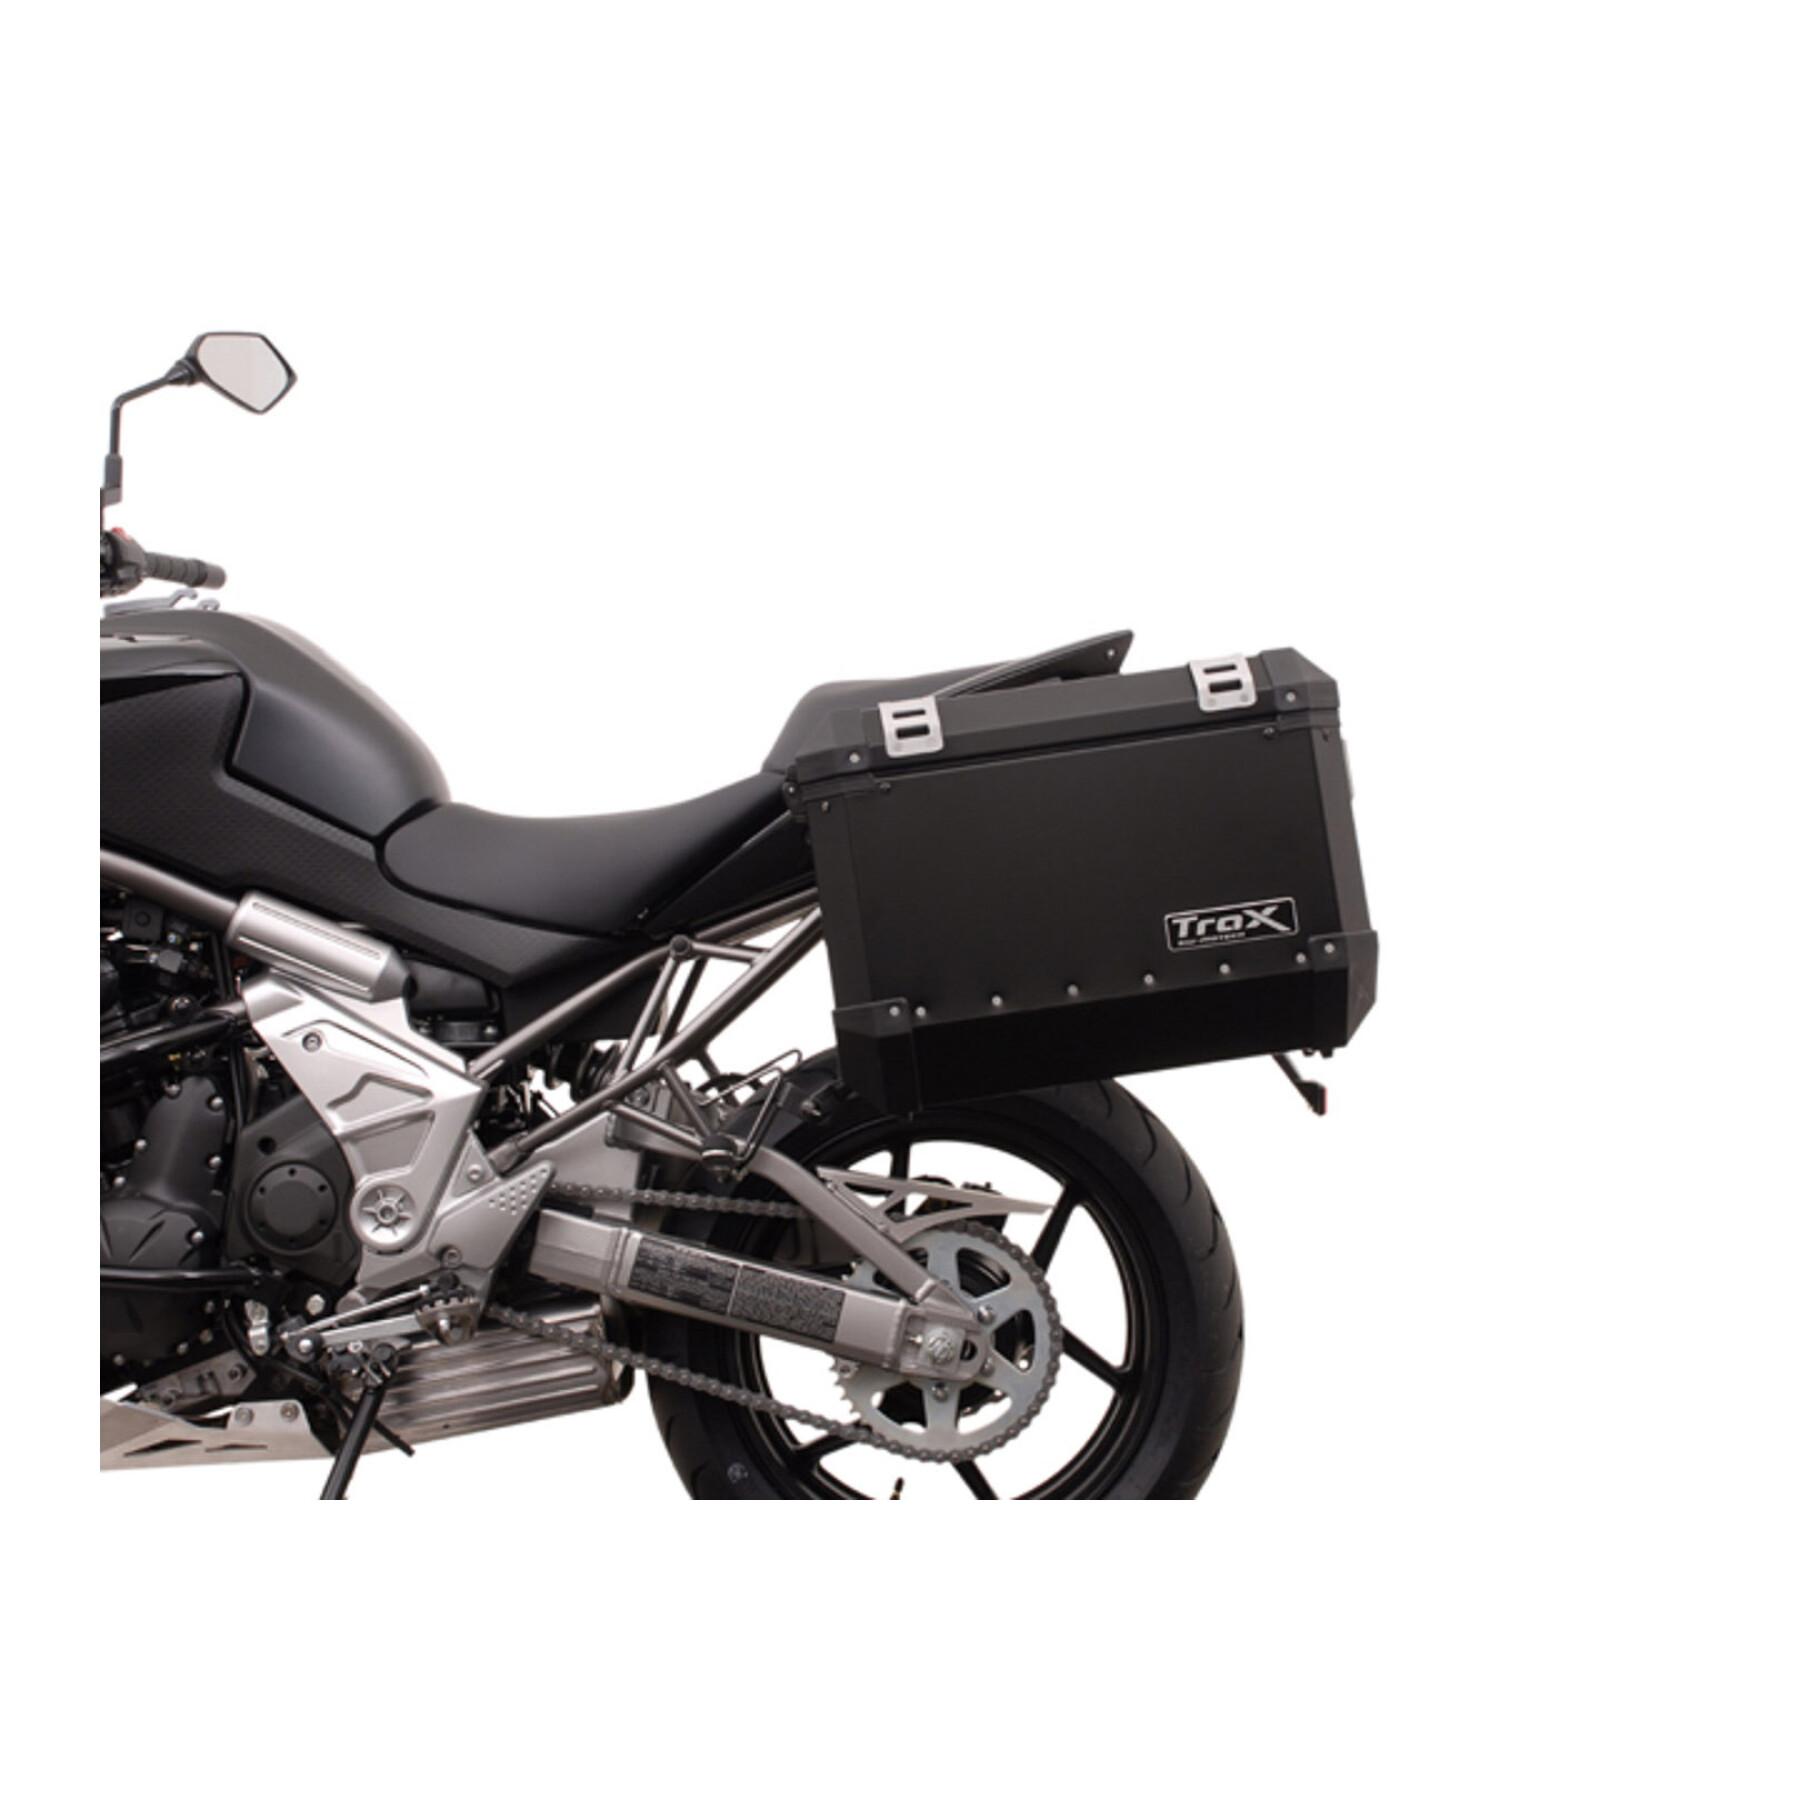 Sidostöd för motorcykel Sw-Motech Evo. Kawasaki Versys 650 (07-14)